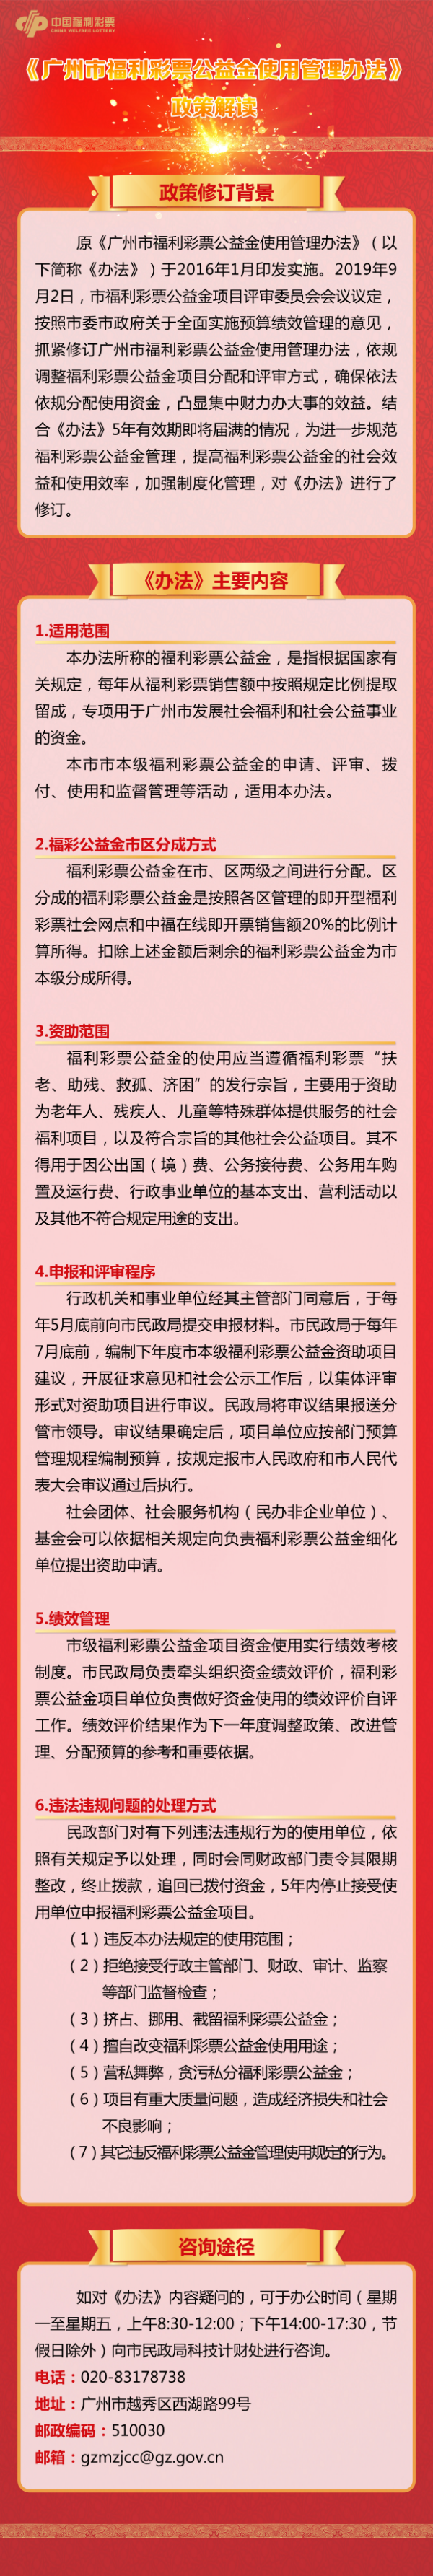 一图读懂：《广州市福利彩票公益金使用管理办法》.jpg